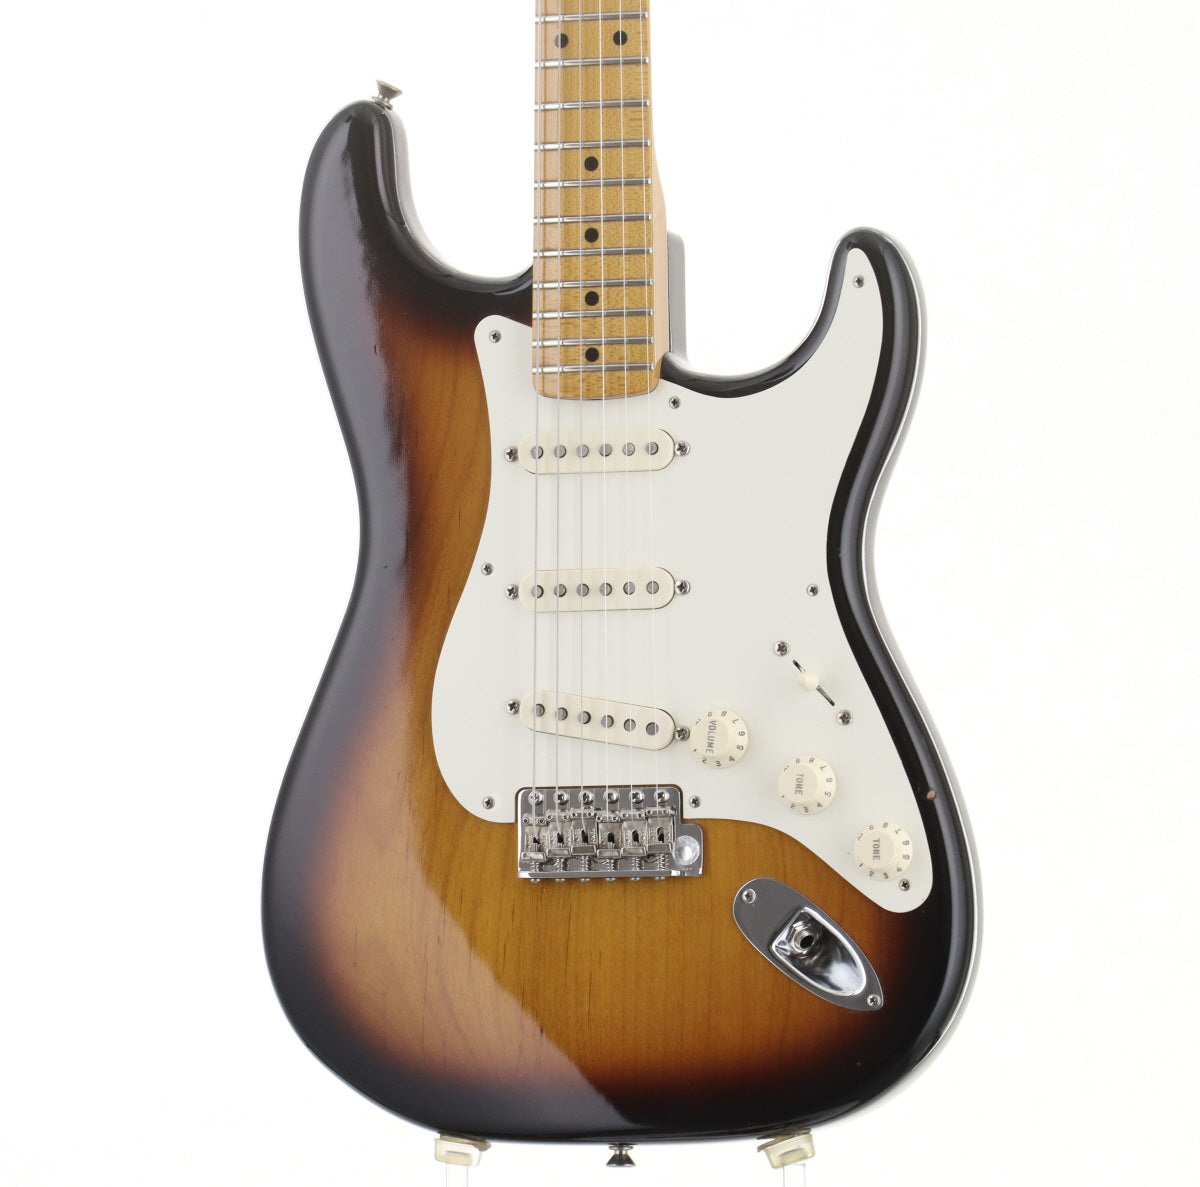 [SN EJ15177] USED Fender / Eric Johnson Stratocaster 2 Color Sunburst Maple [06]